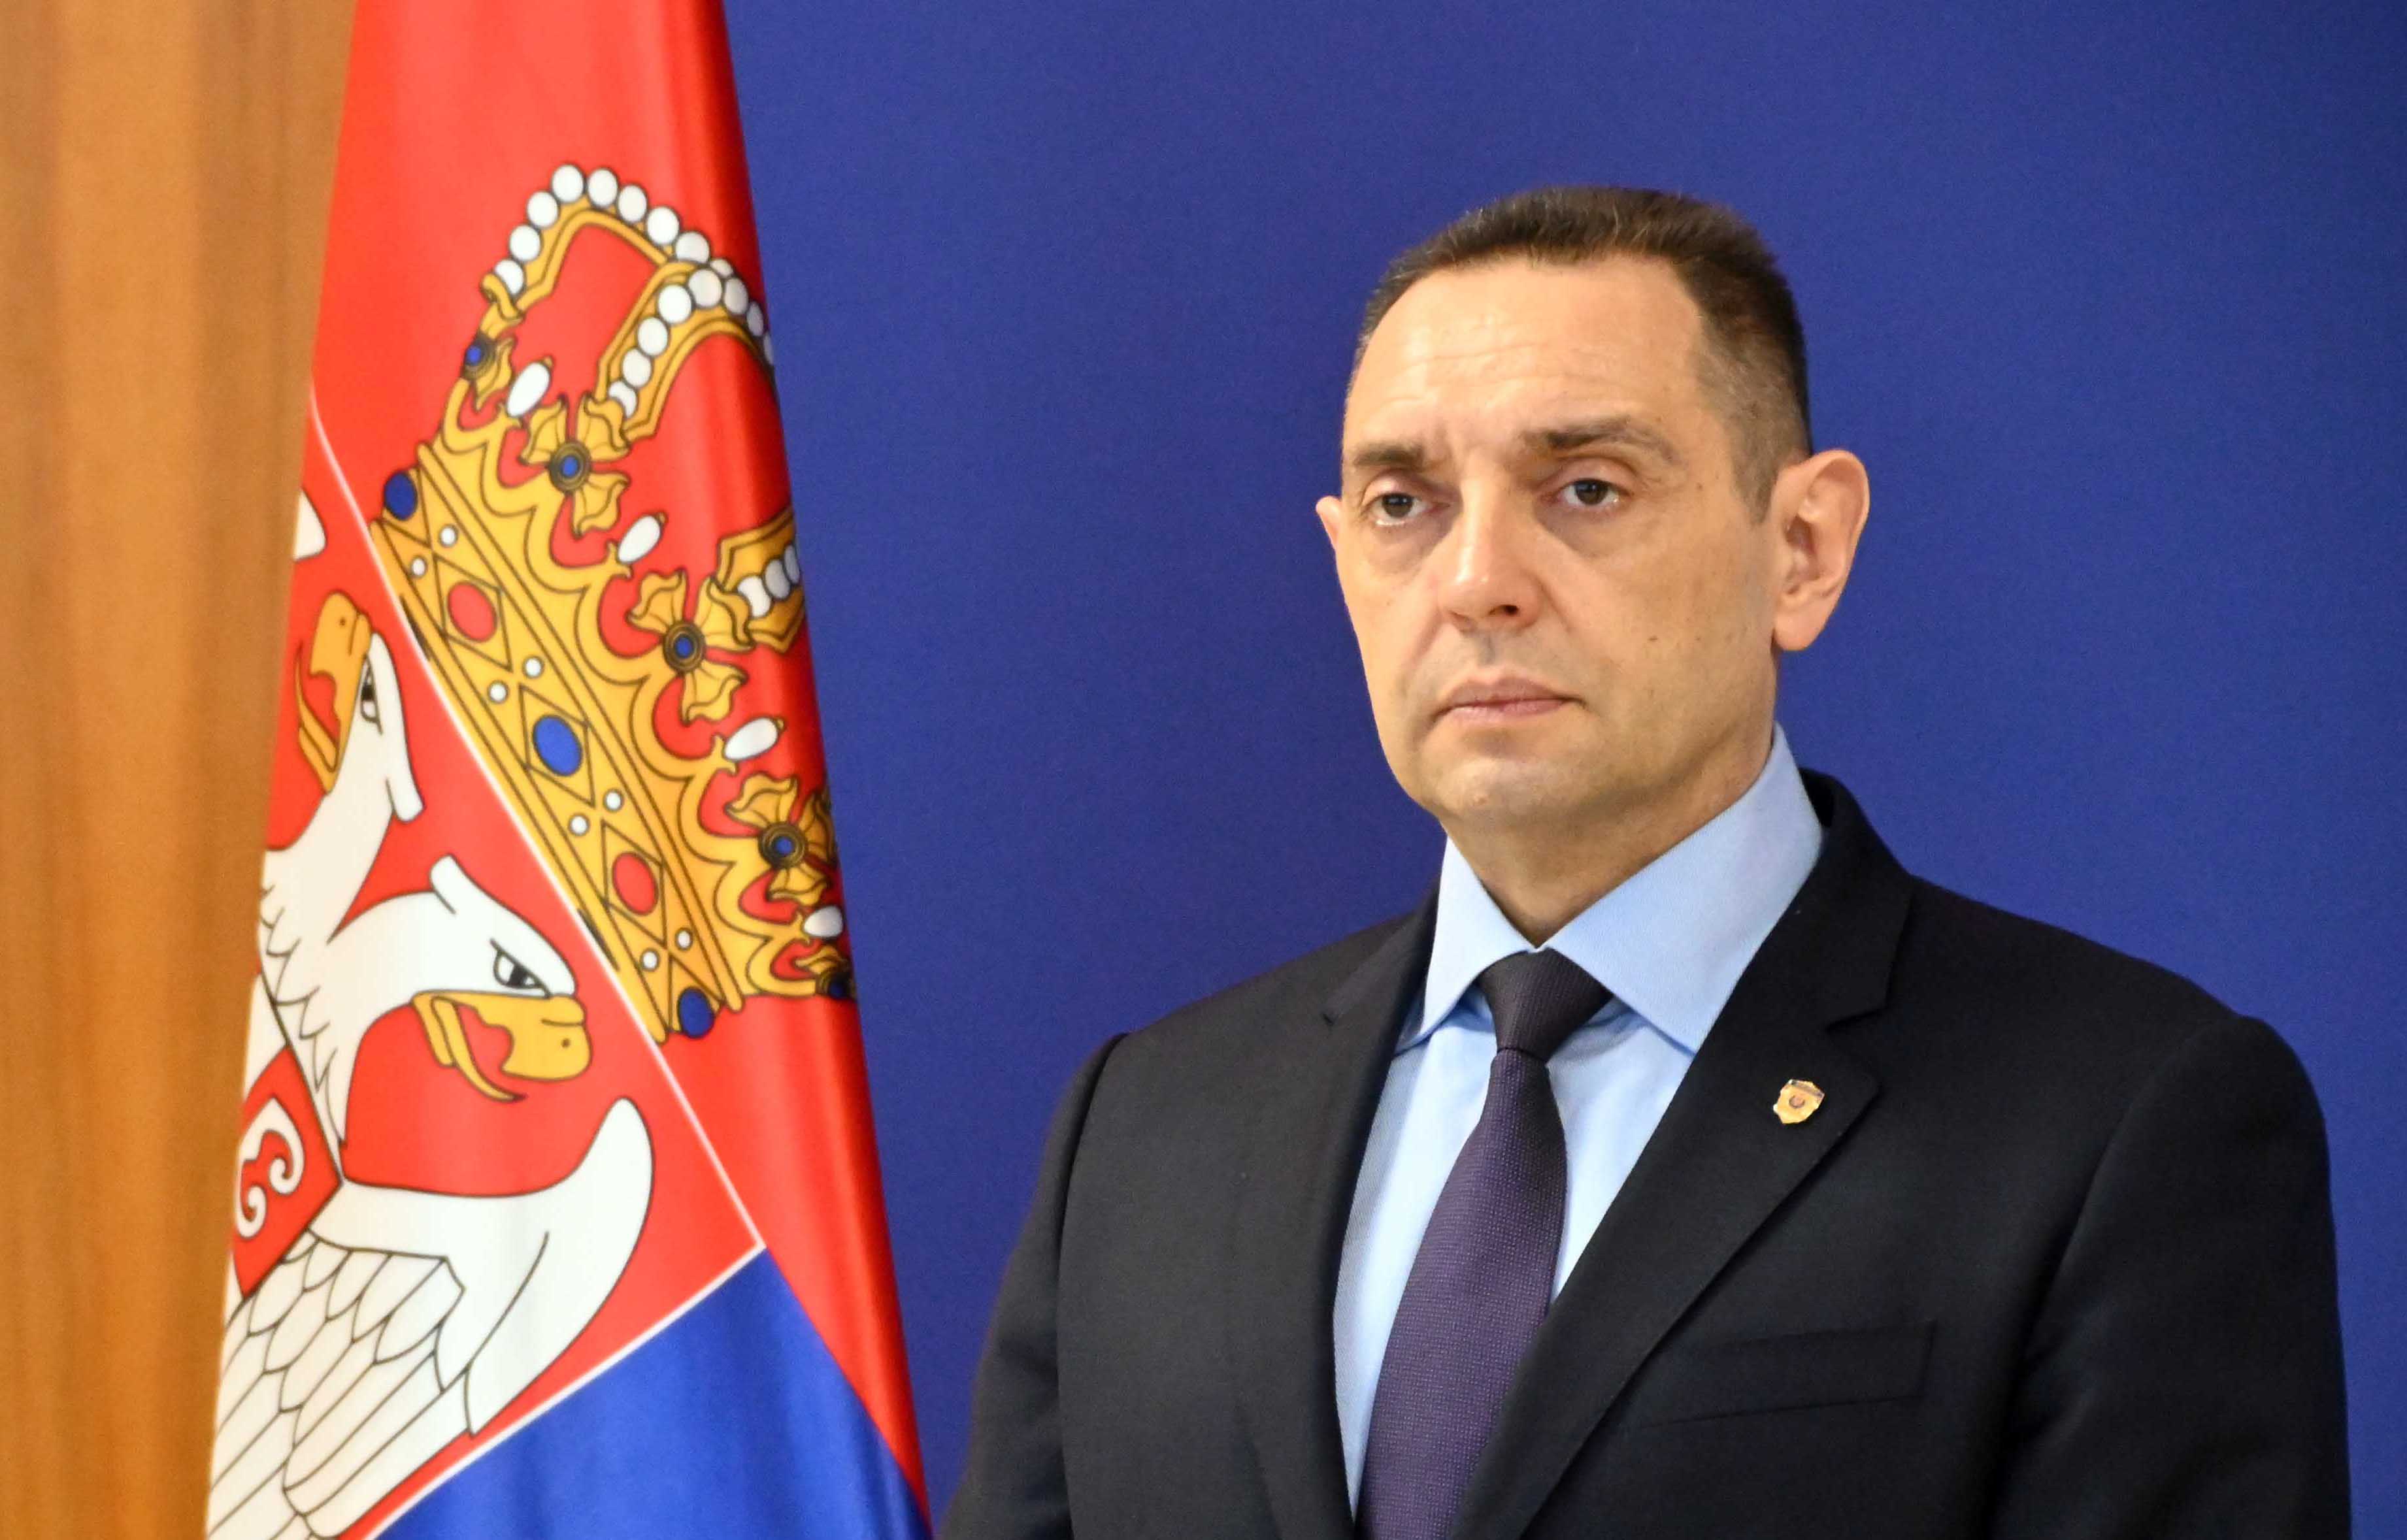 Министар Александар Вулин одговорио Османи: Србија није ничији сателит, али Приштина јесте и самостална је колико је и Степинац светац